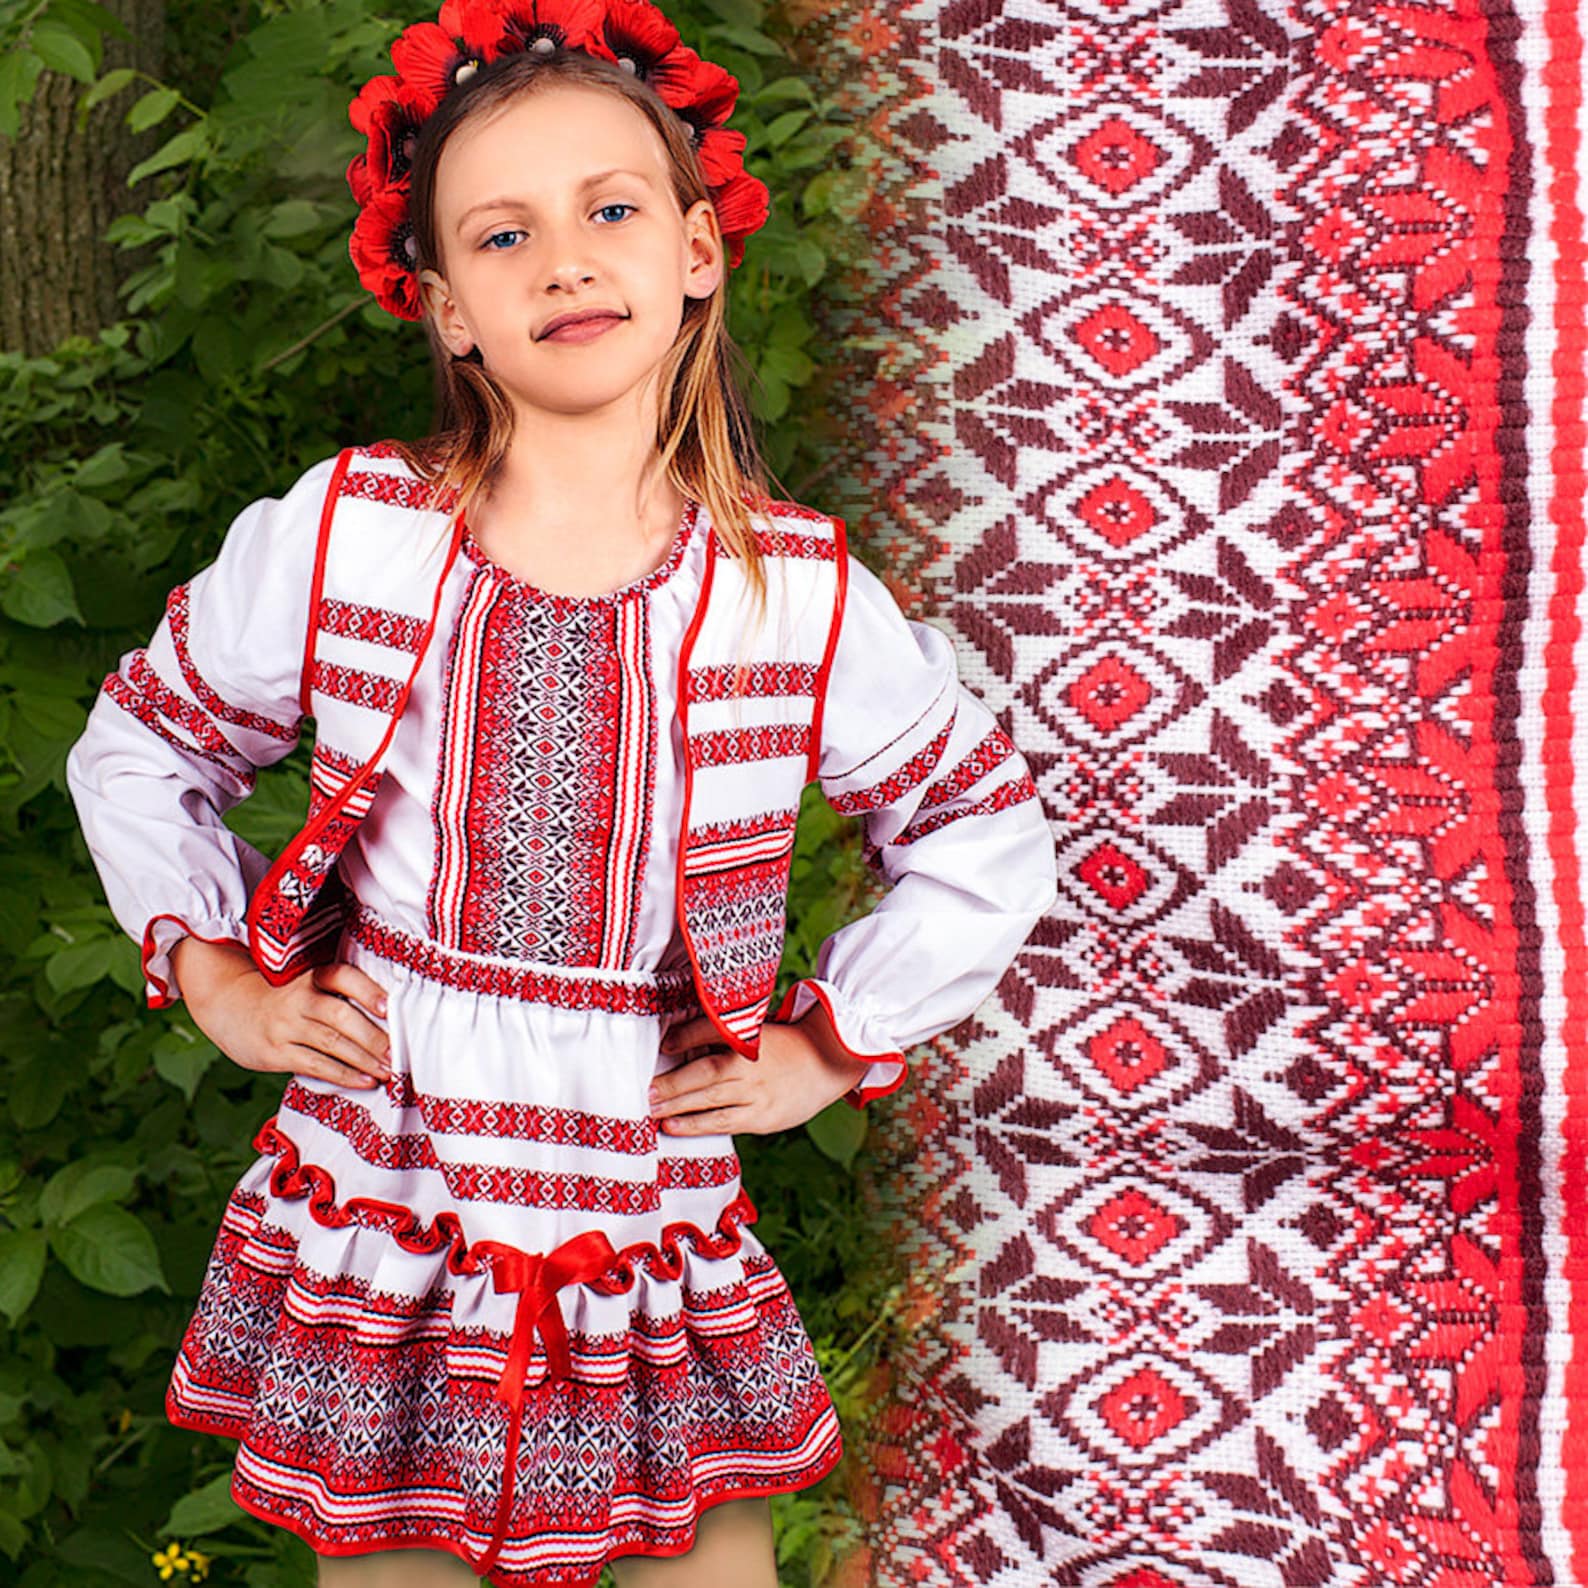 Украинская одежда 6. Украинский костюм. Украинский костюм для девочки. Украинский народный костюм. Украинский национальный костюм для девочки.